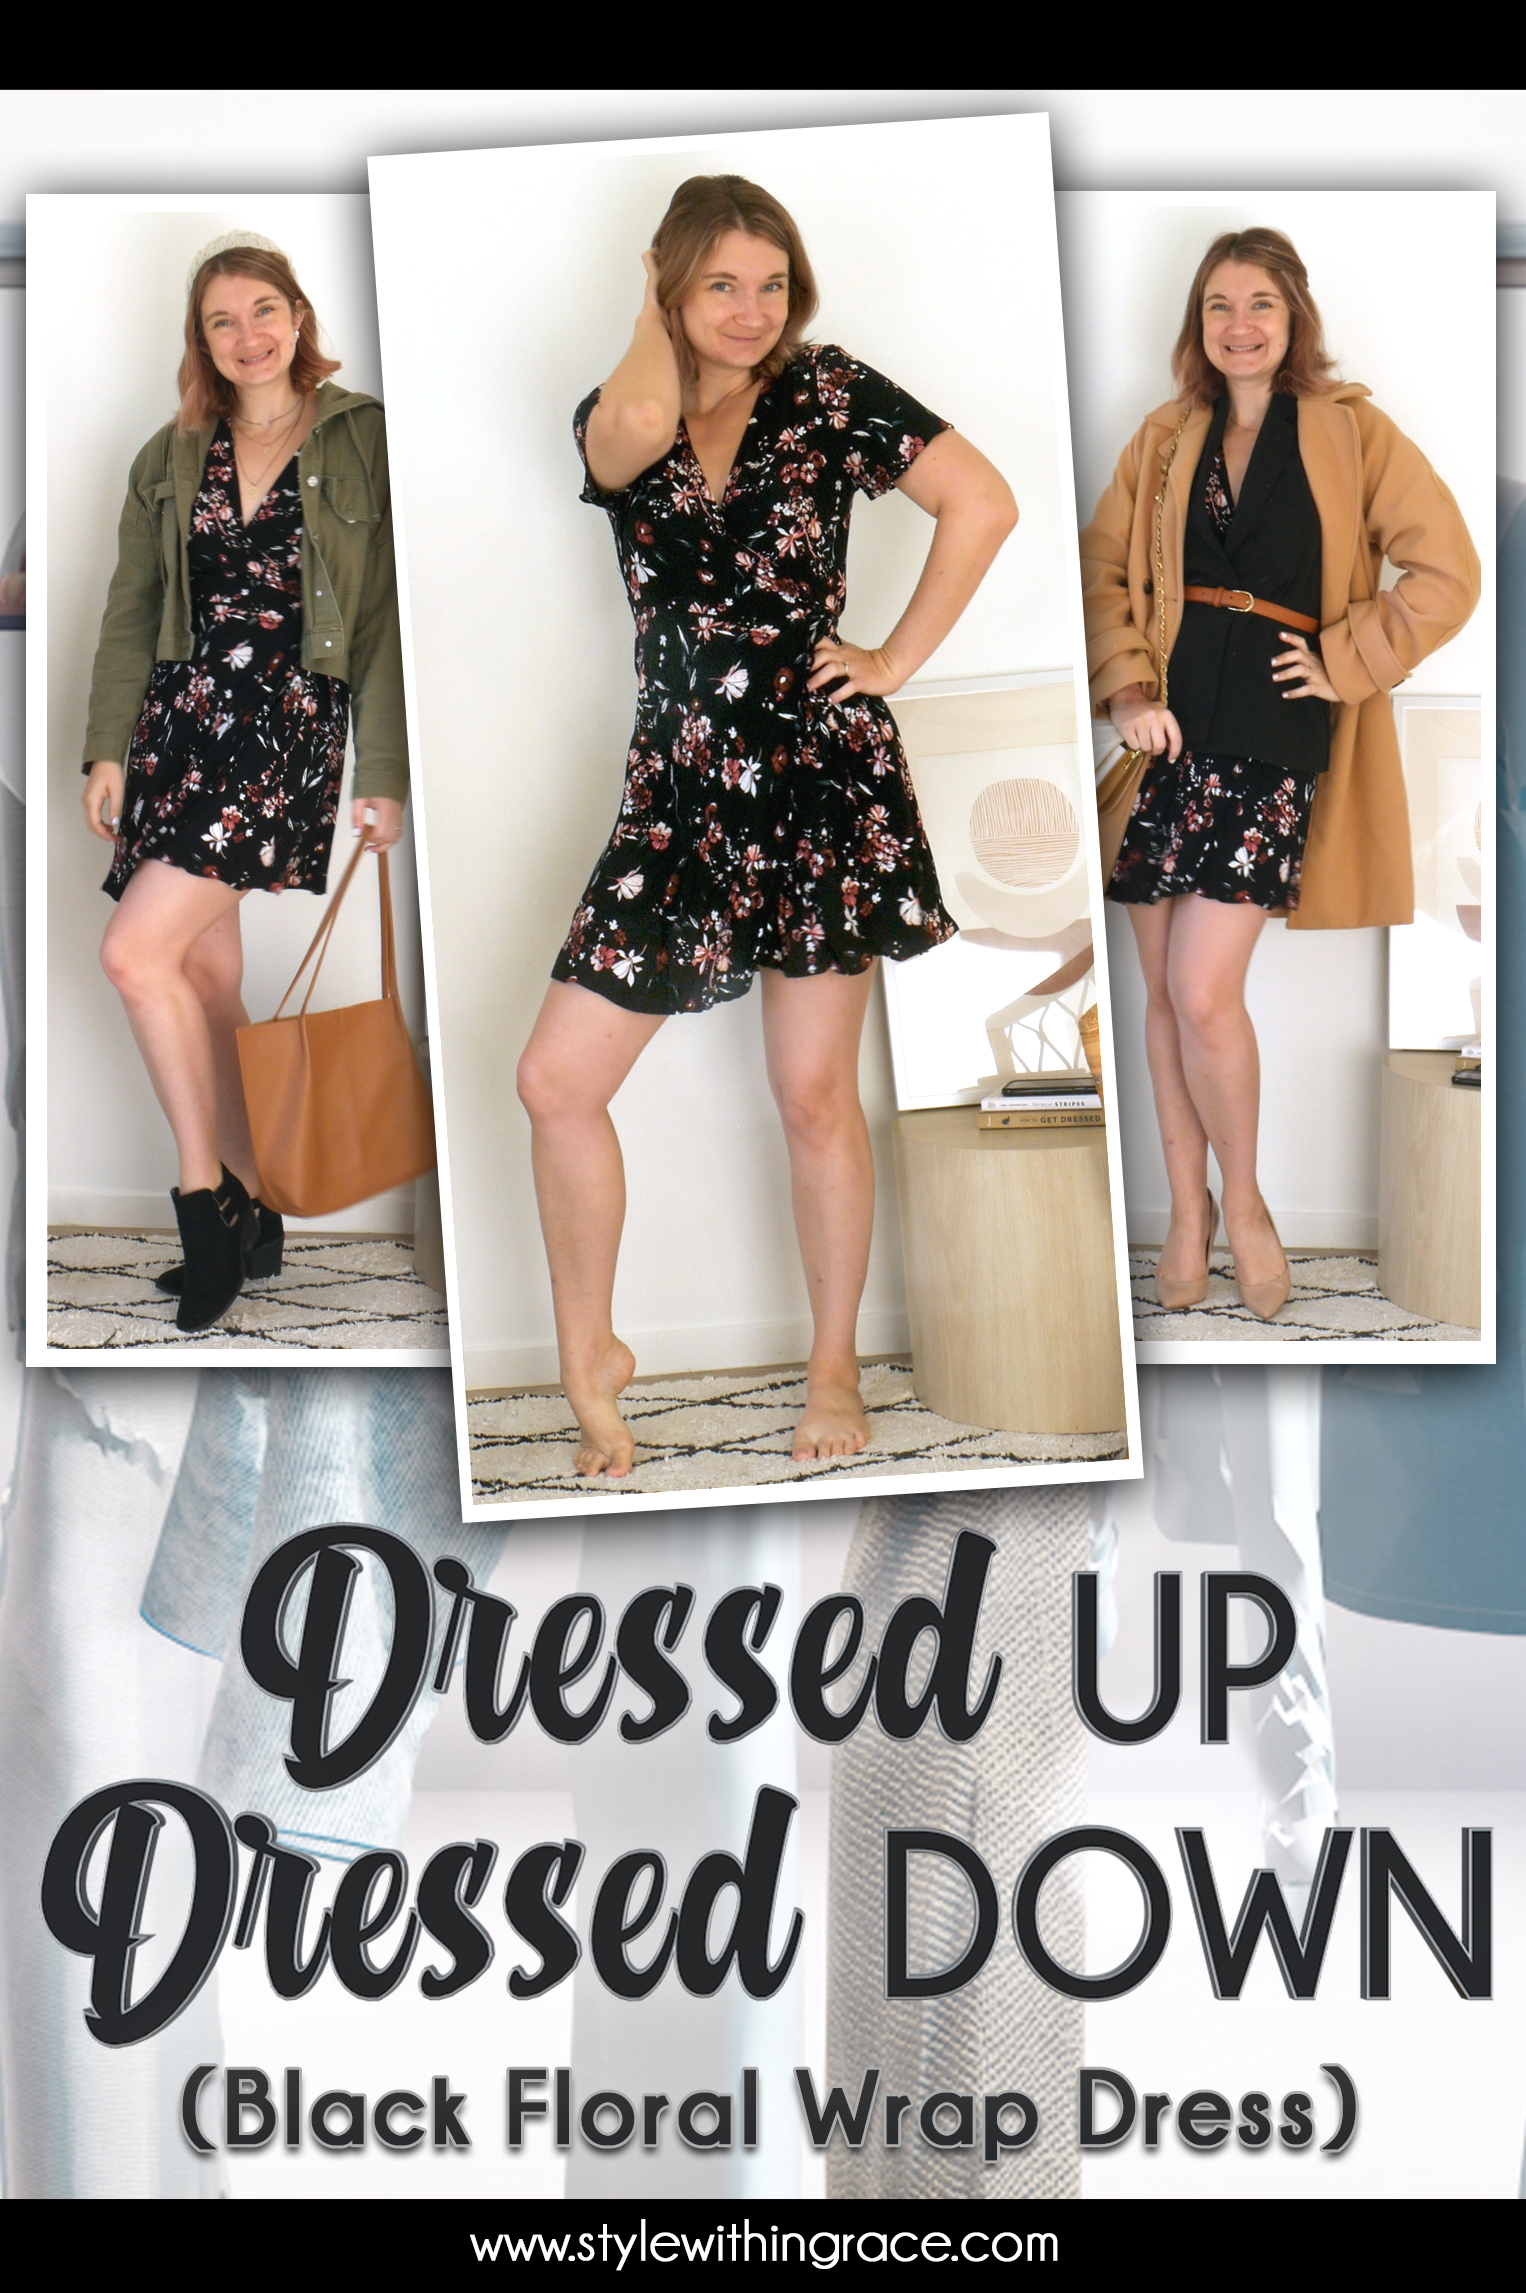 Dressed Up Dressed Down (Black Floral Wrap Dress) Pinterest